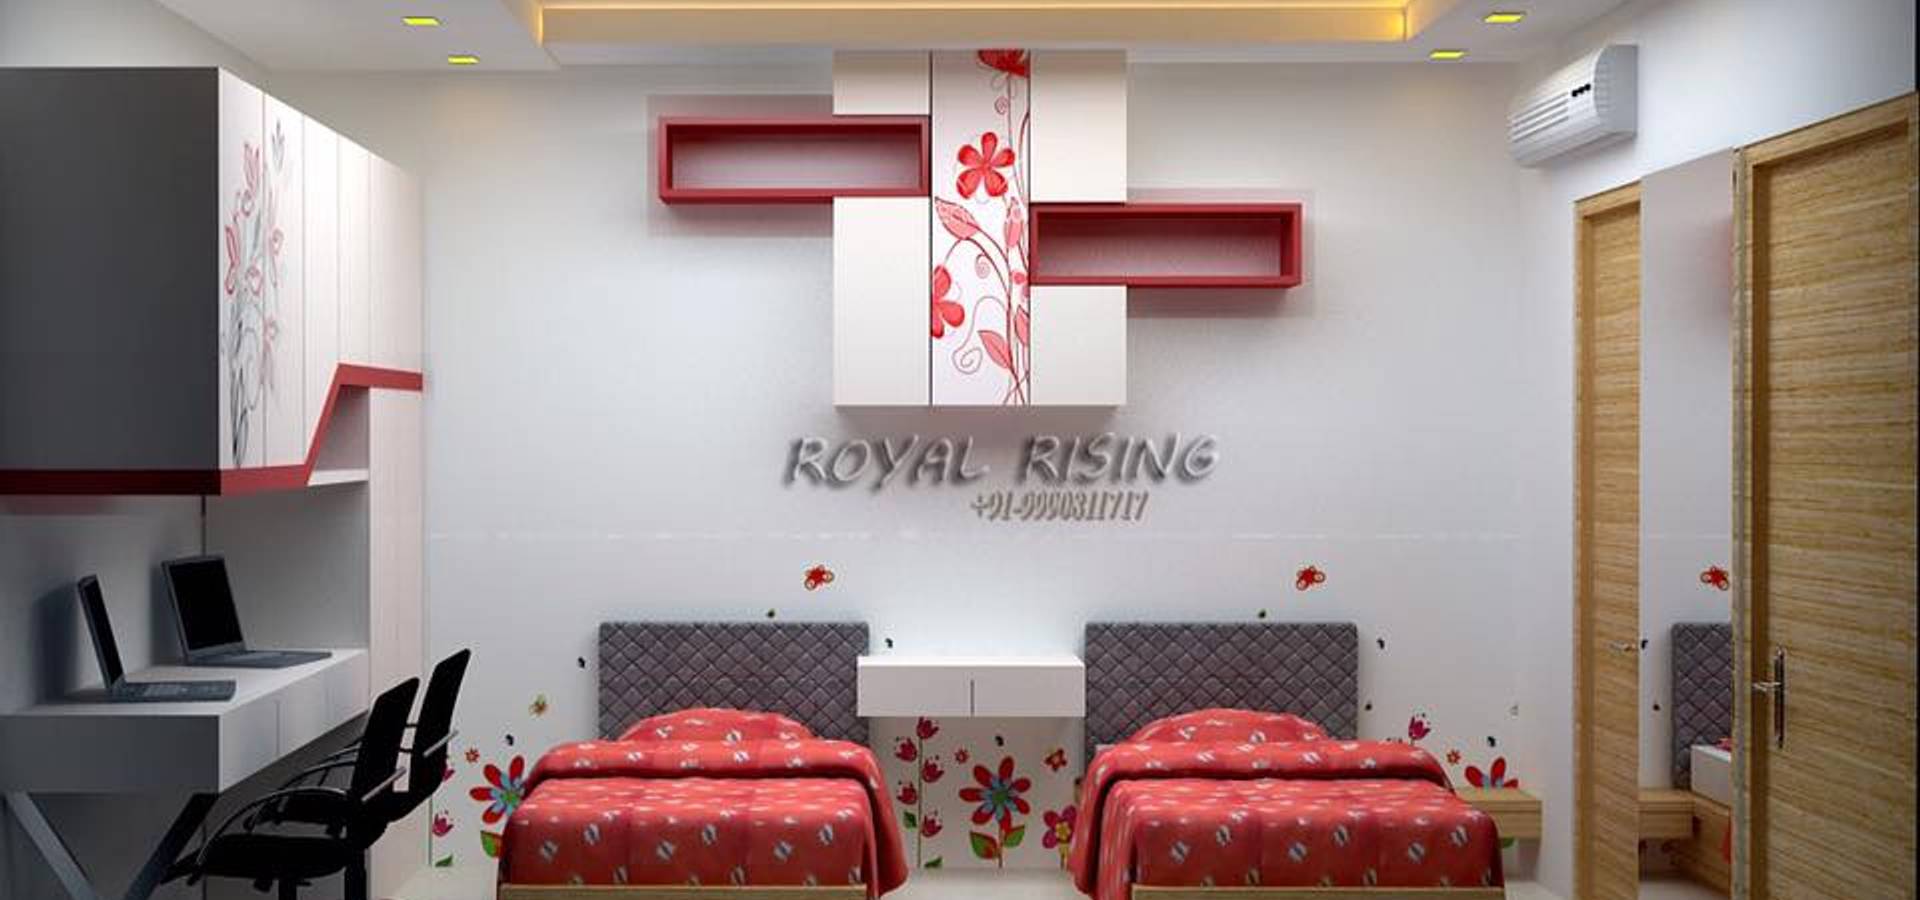 Royal Rising Interiors